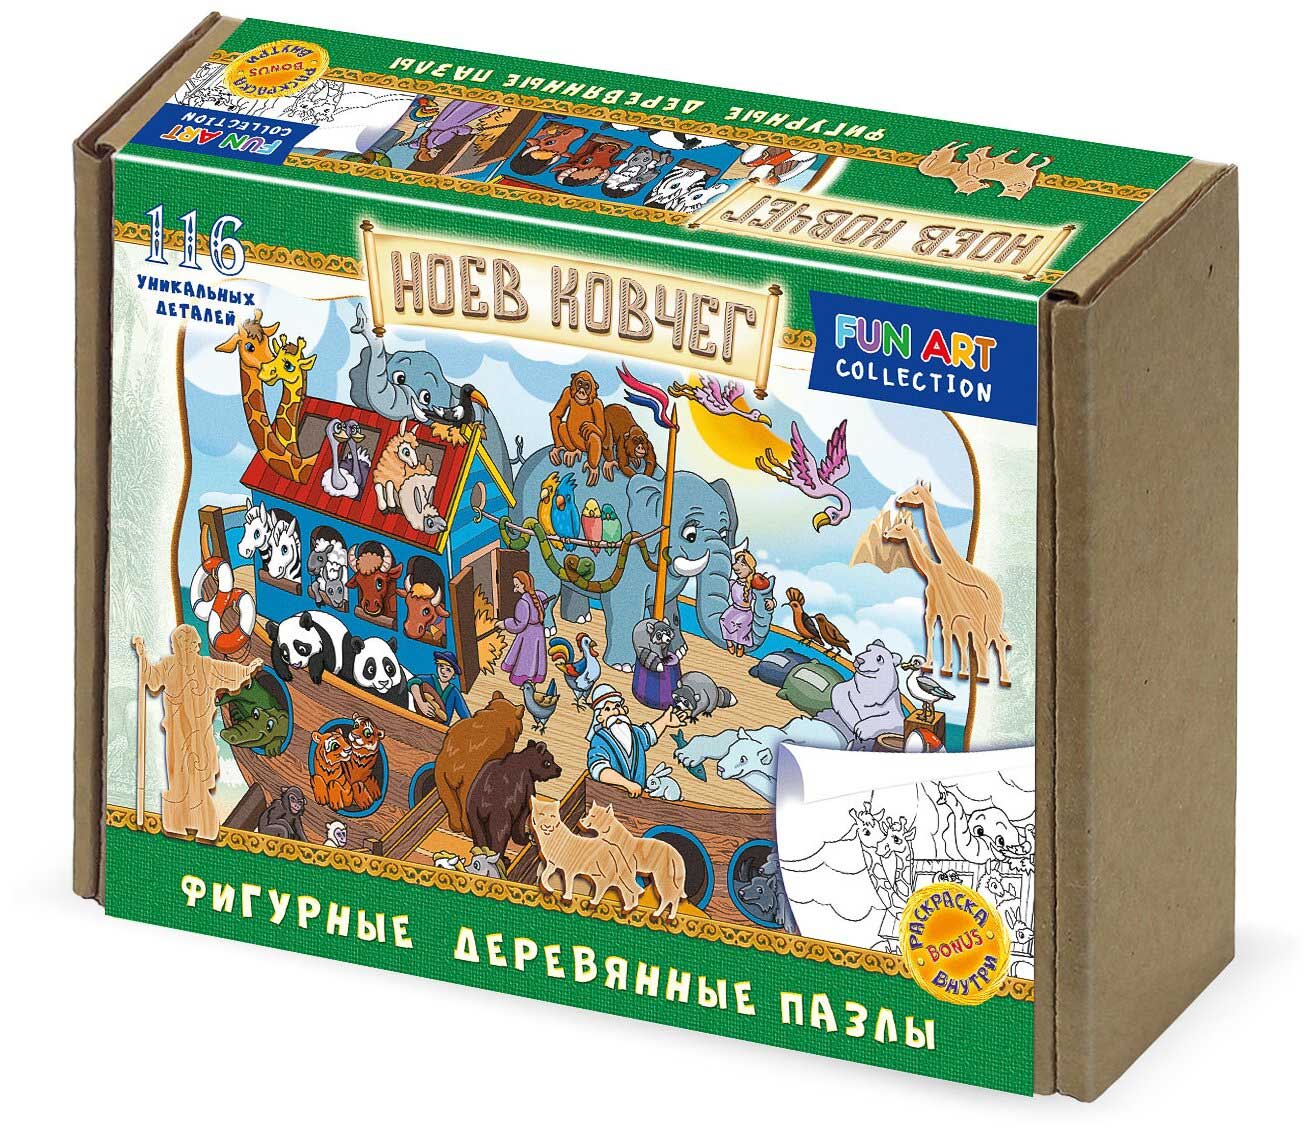 Фигурный деревянный пазл FUN ART collection Ноев ковчег 8370